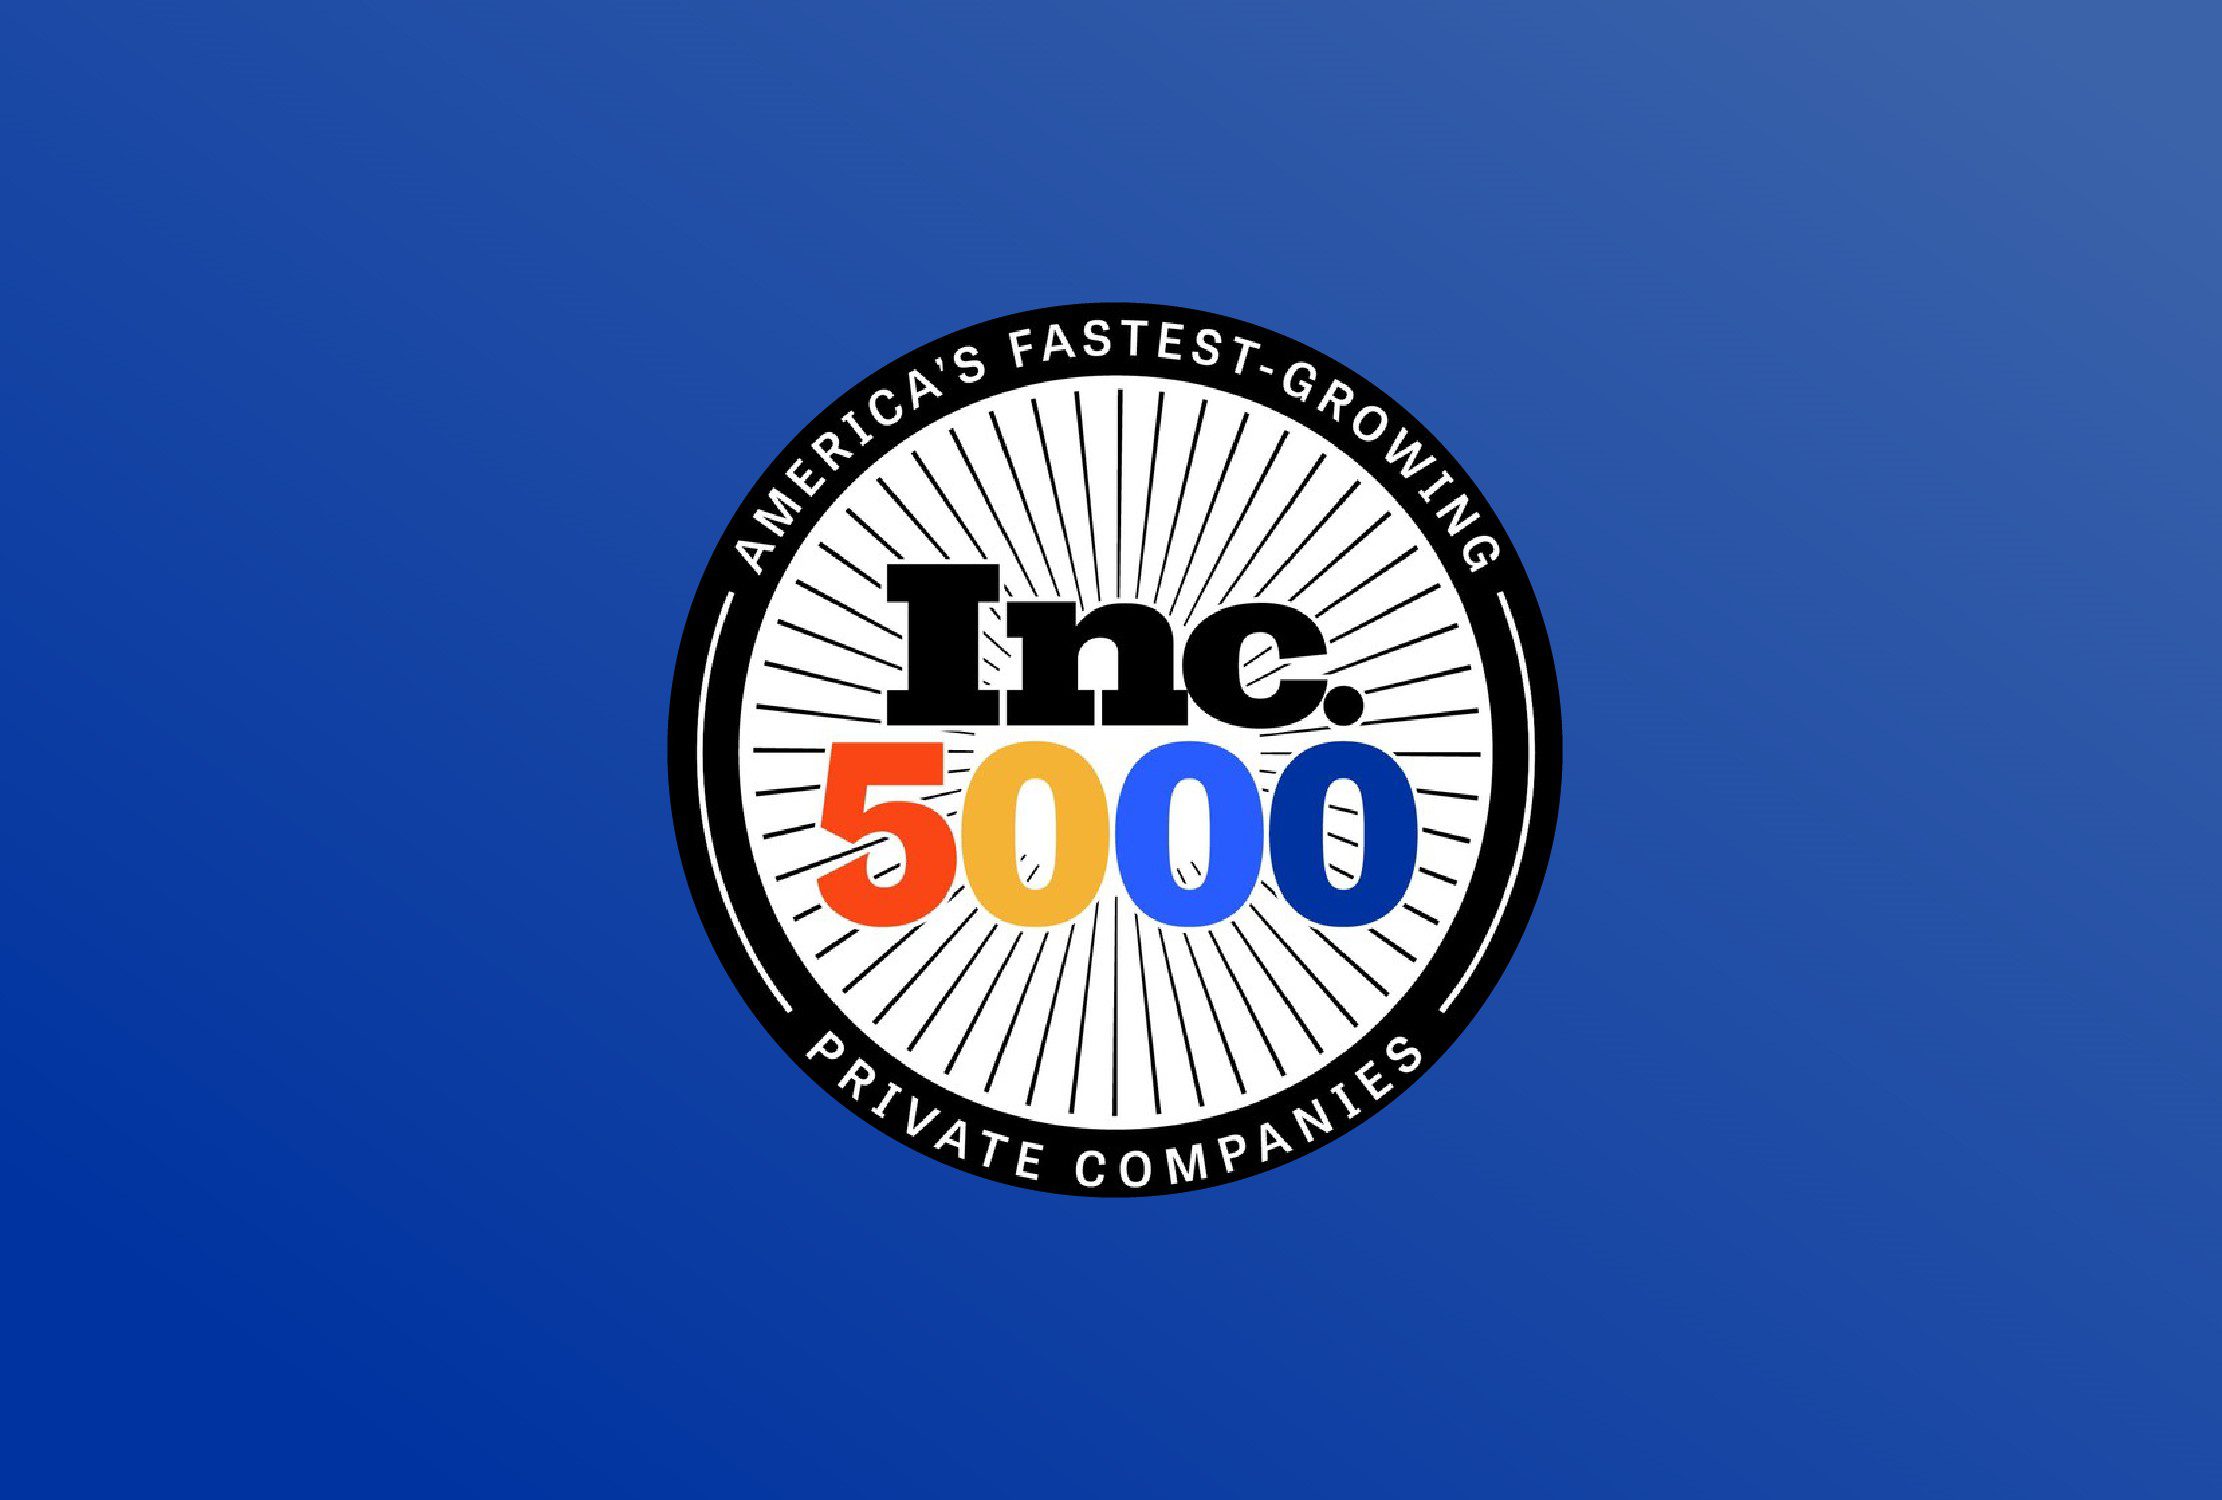 inc5000 award